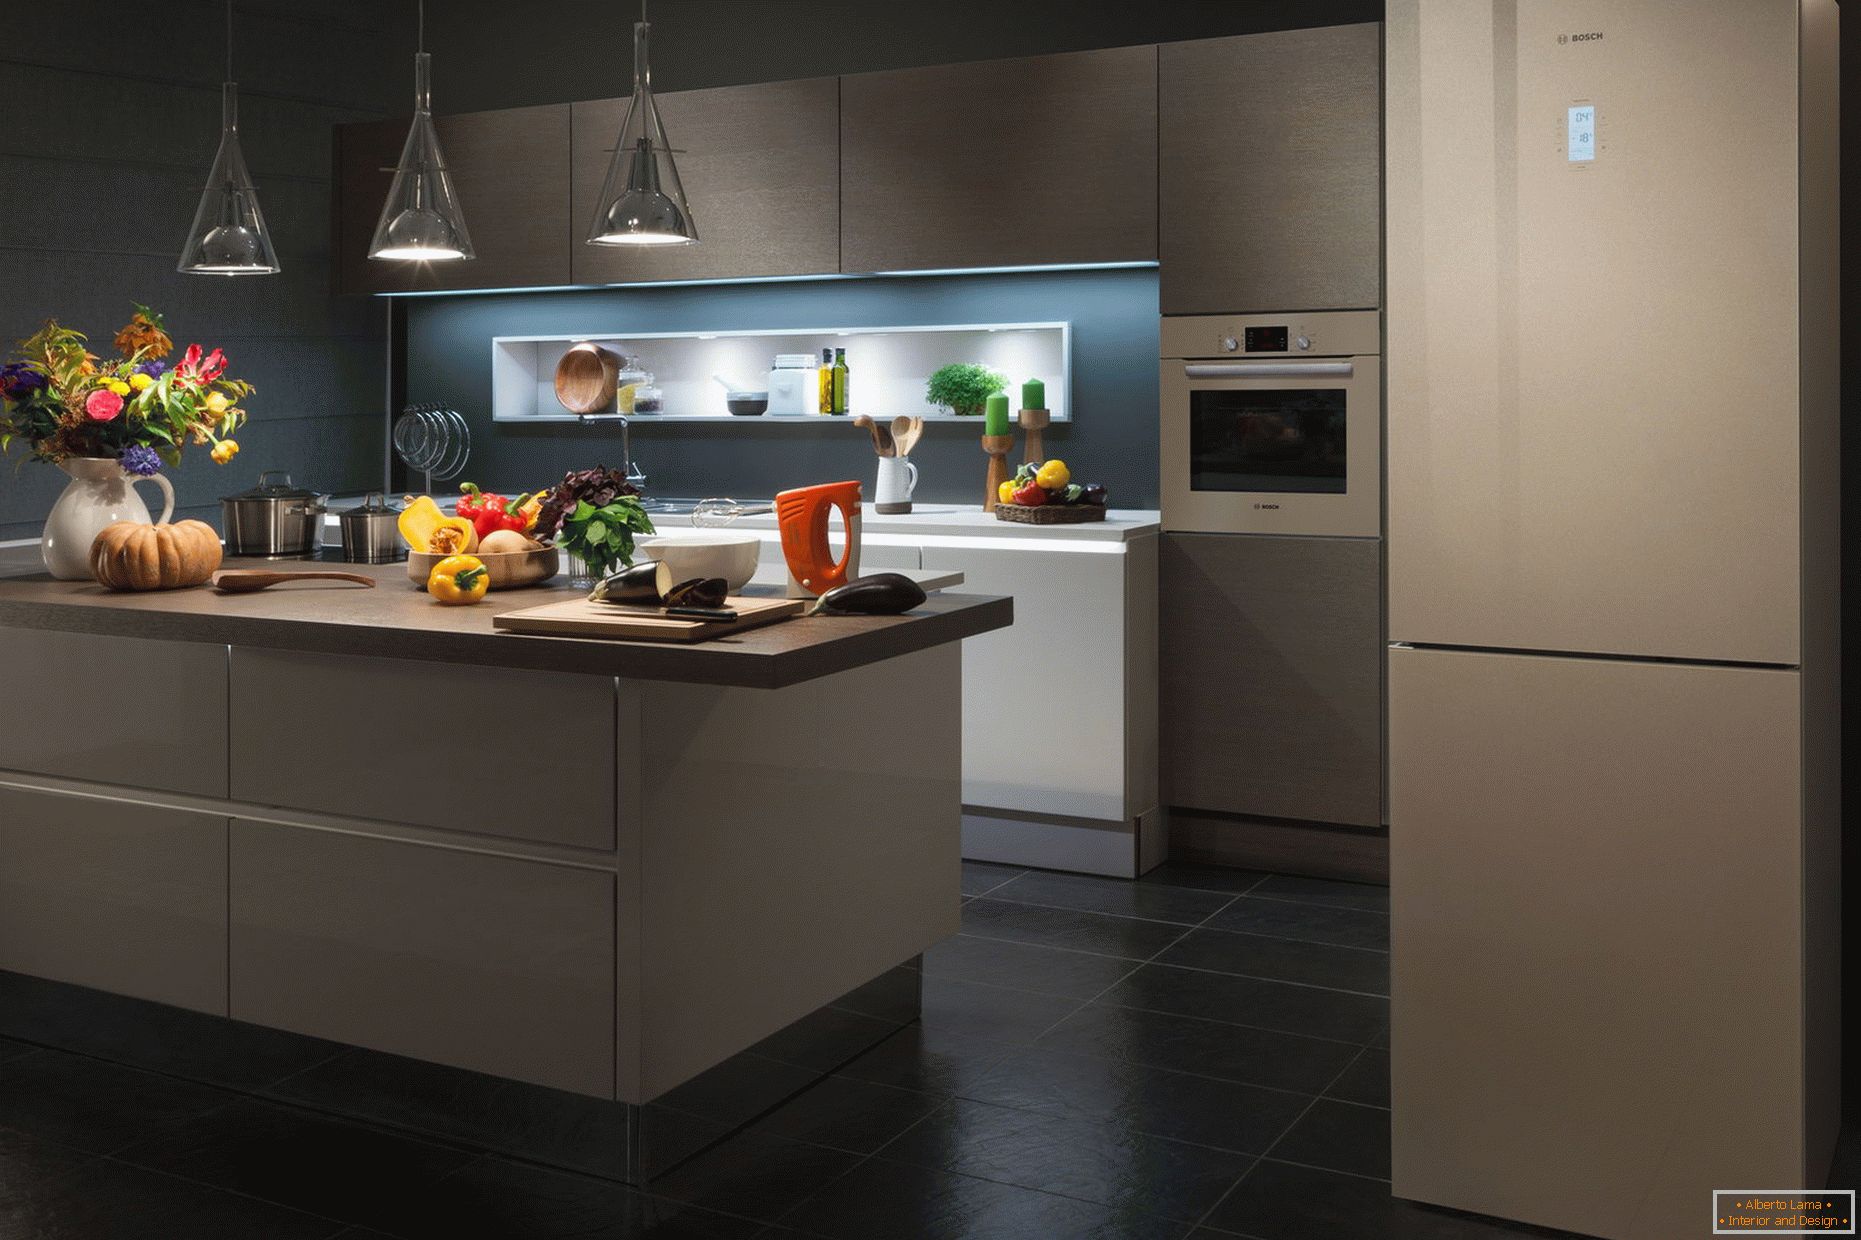 Interior moderno da cozinha com geladeira